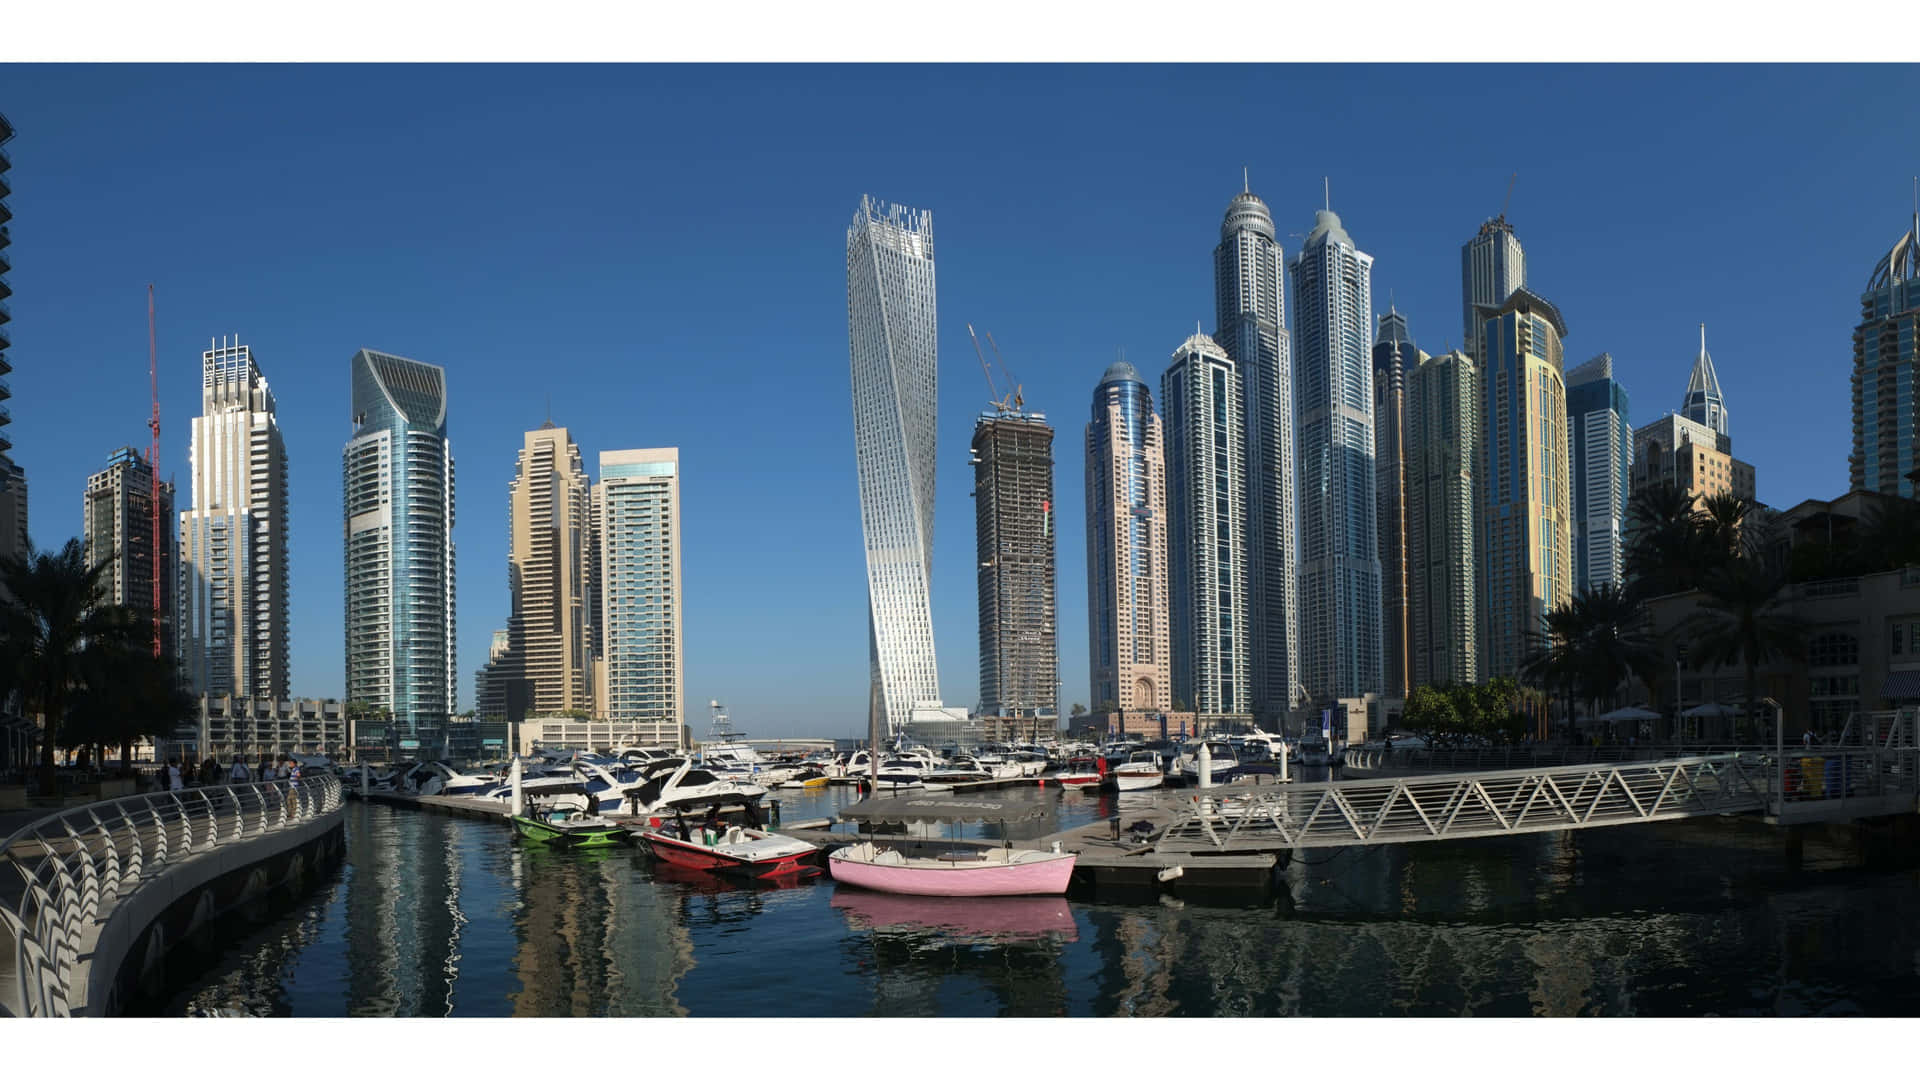 Dubai Marina - en by med høje bygninger